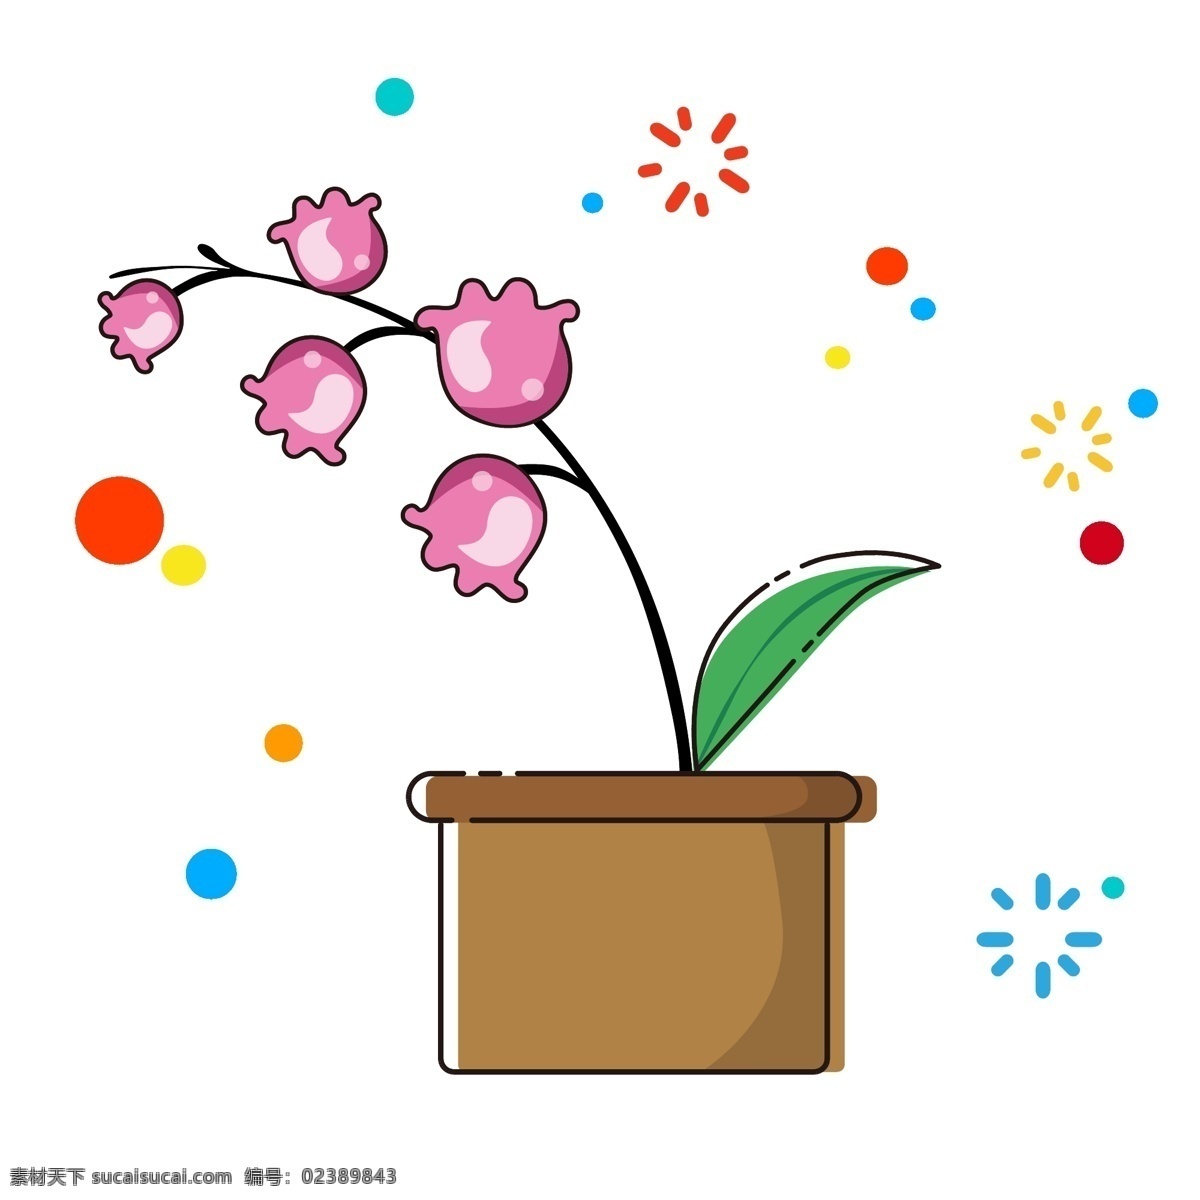 mbe 卡通 手绘 花卉 植物 铃兰 矢量 可爱